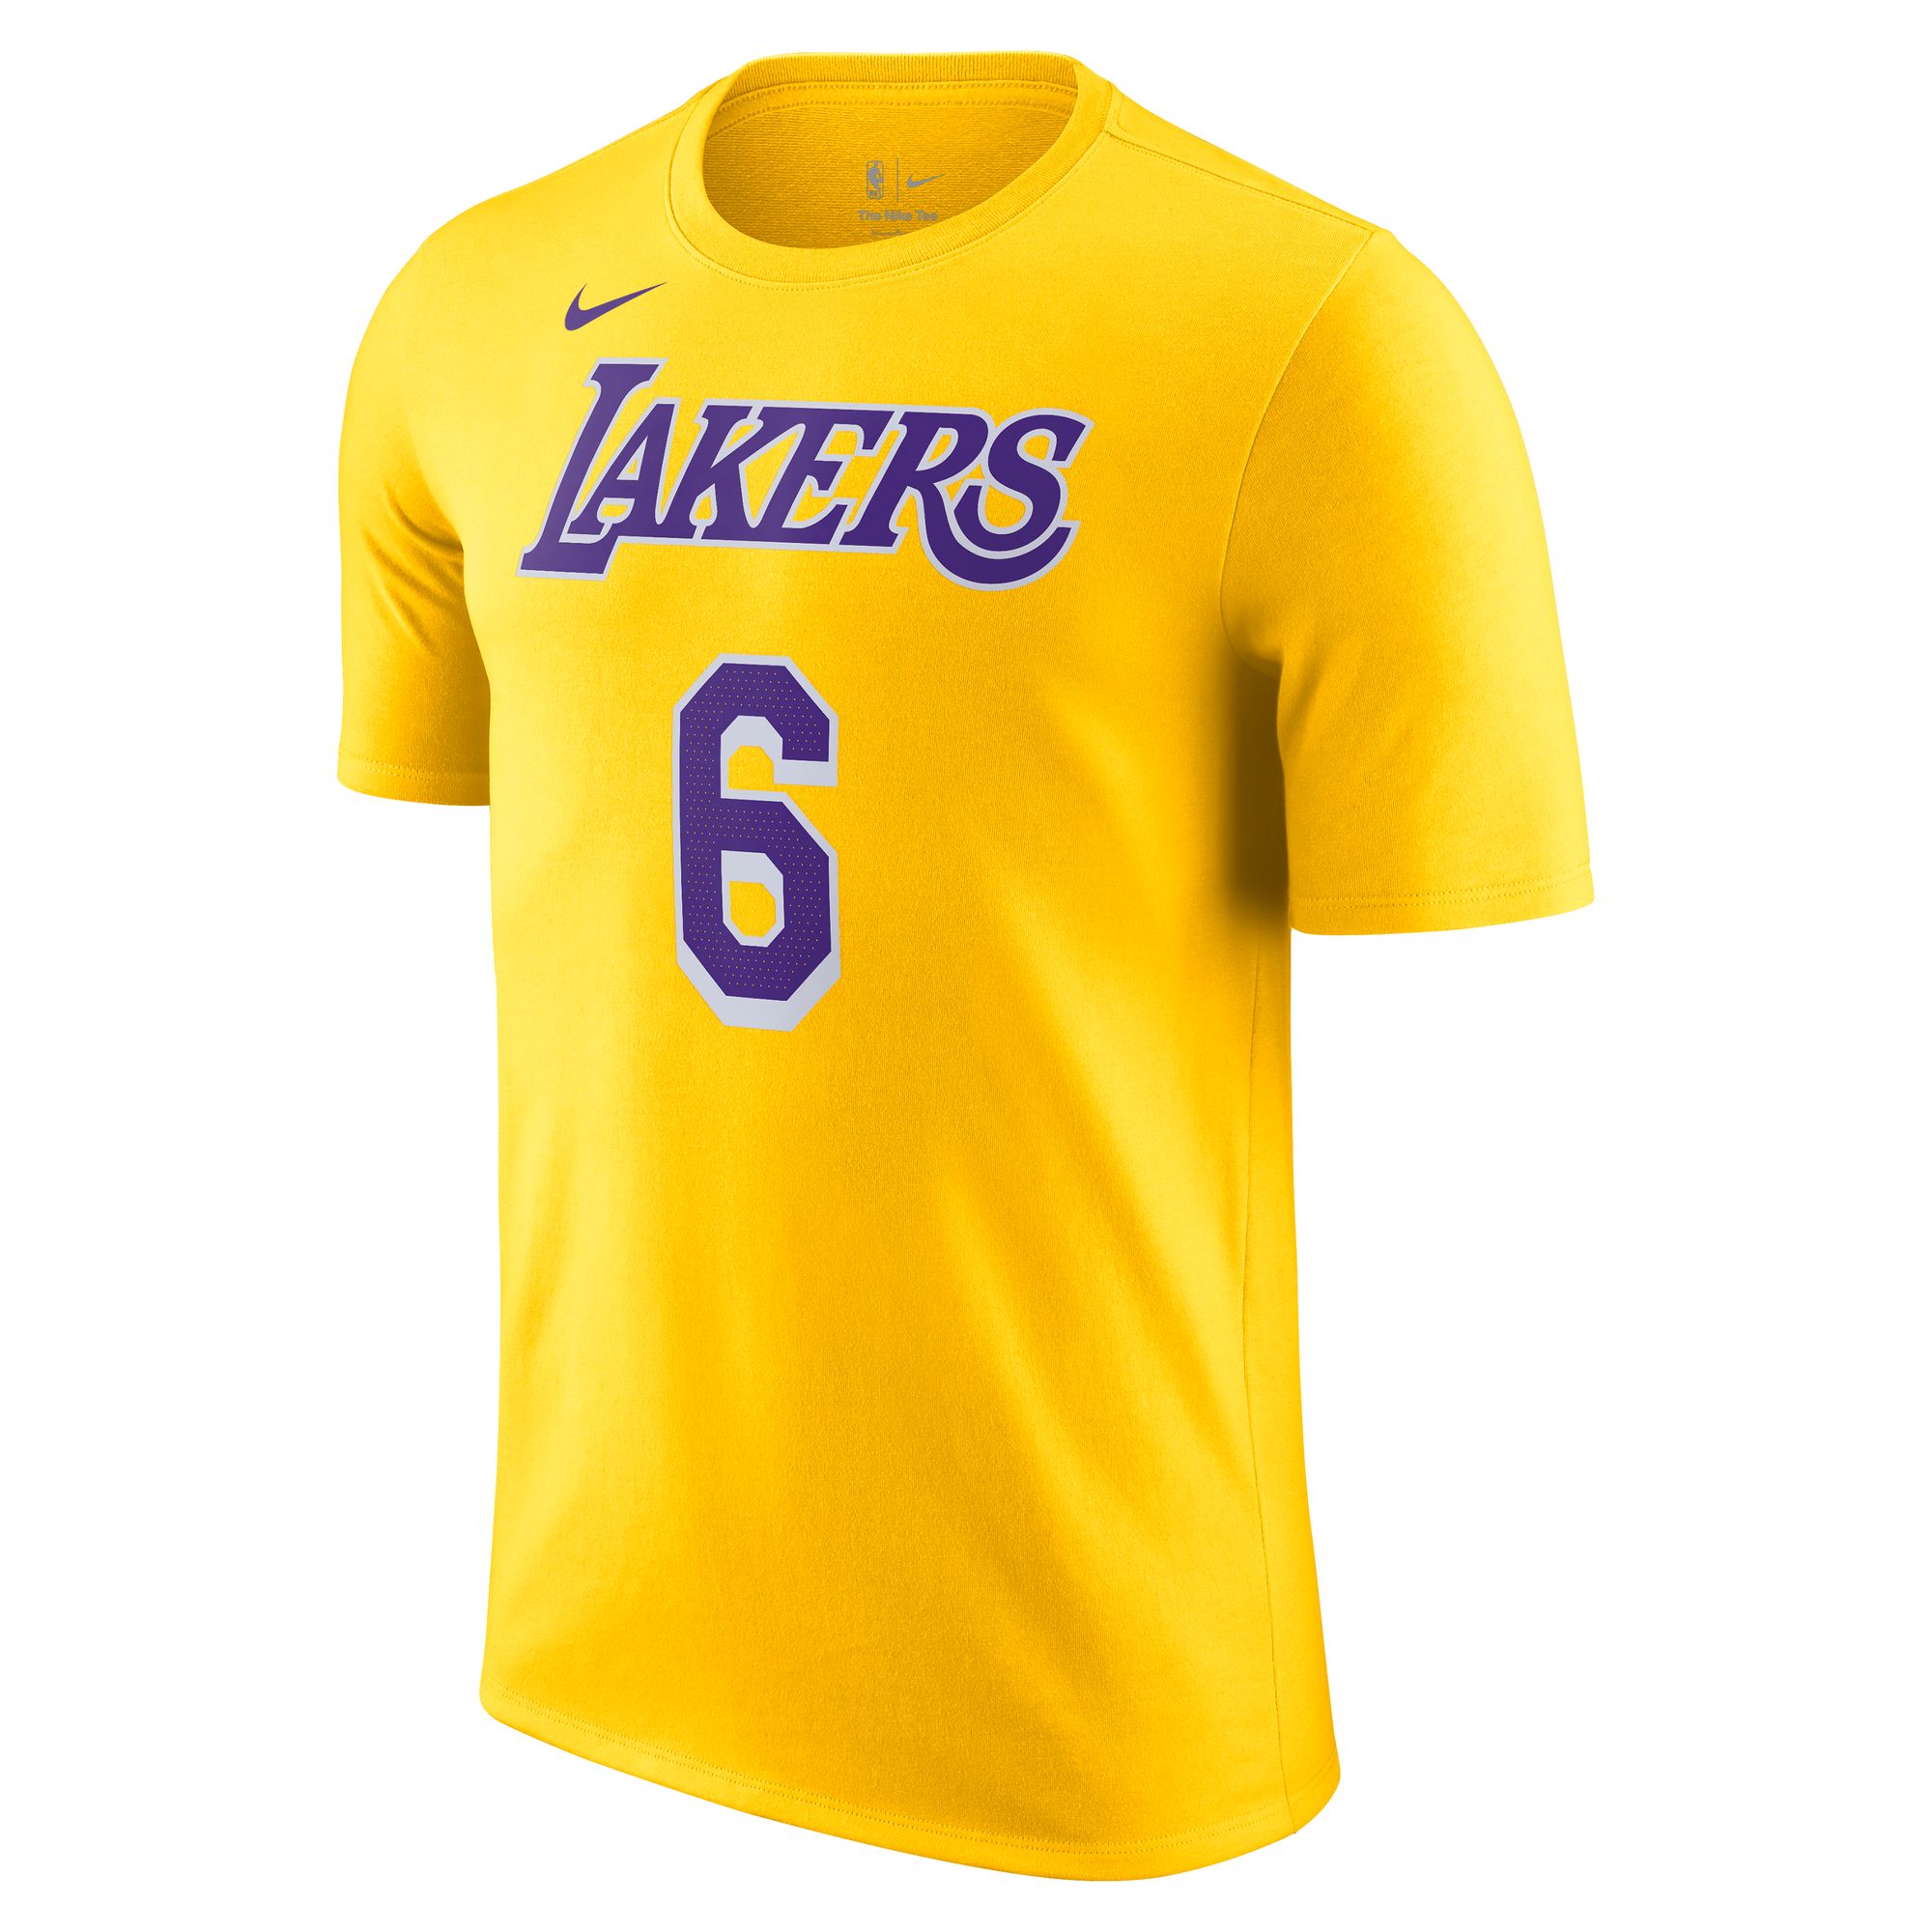 Футболка Nike Los Angeles Lakers - картинка